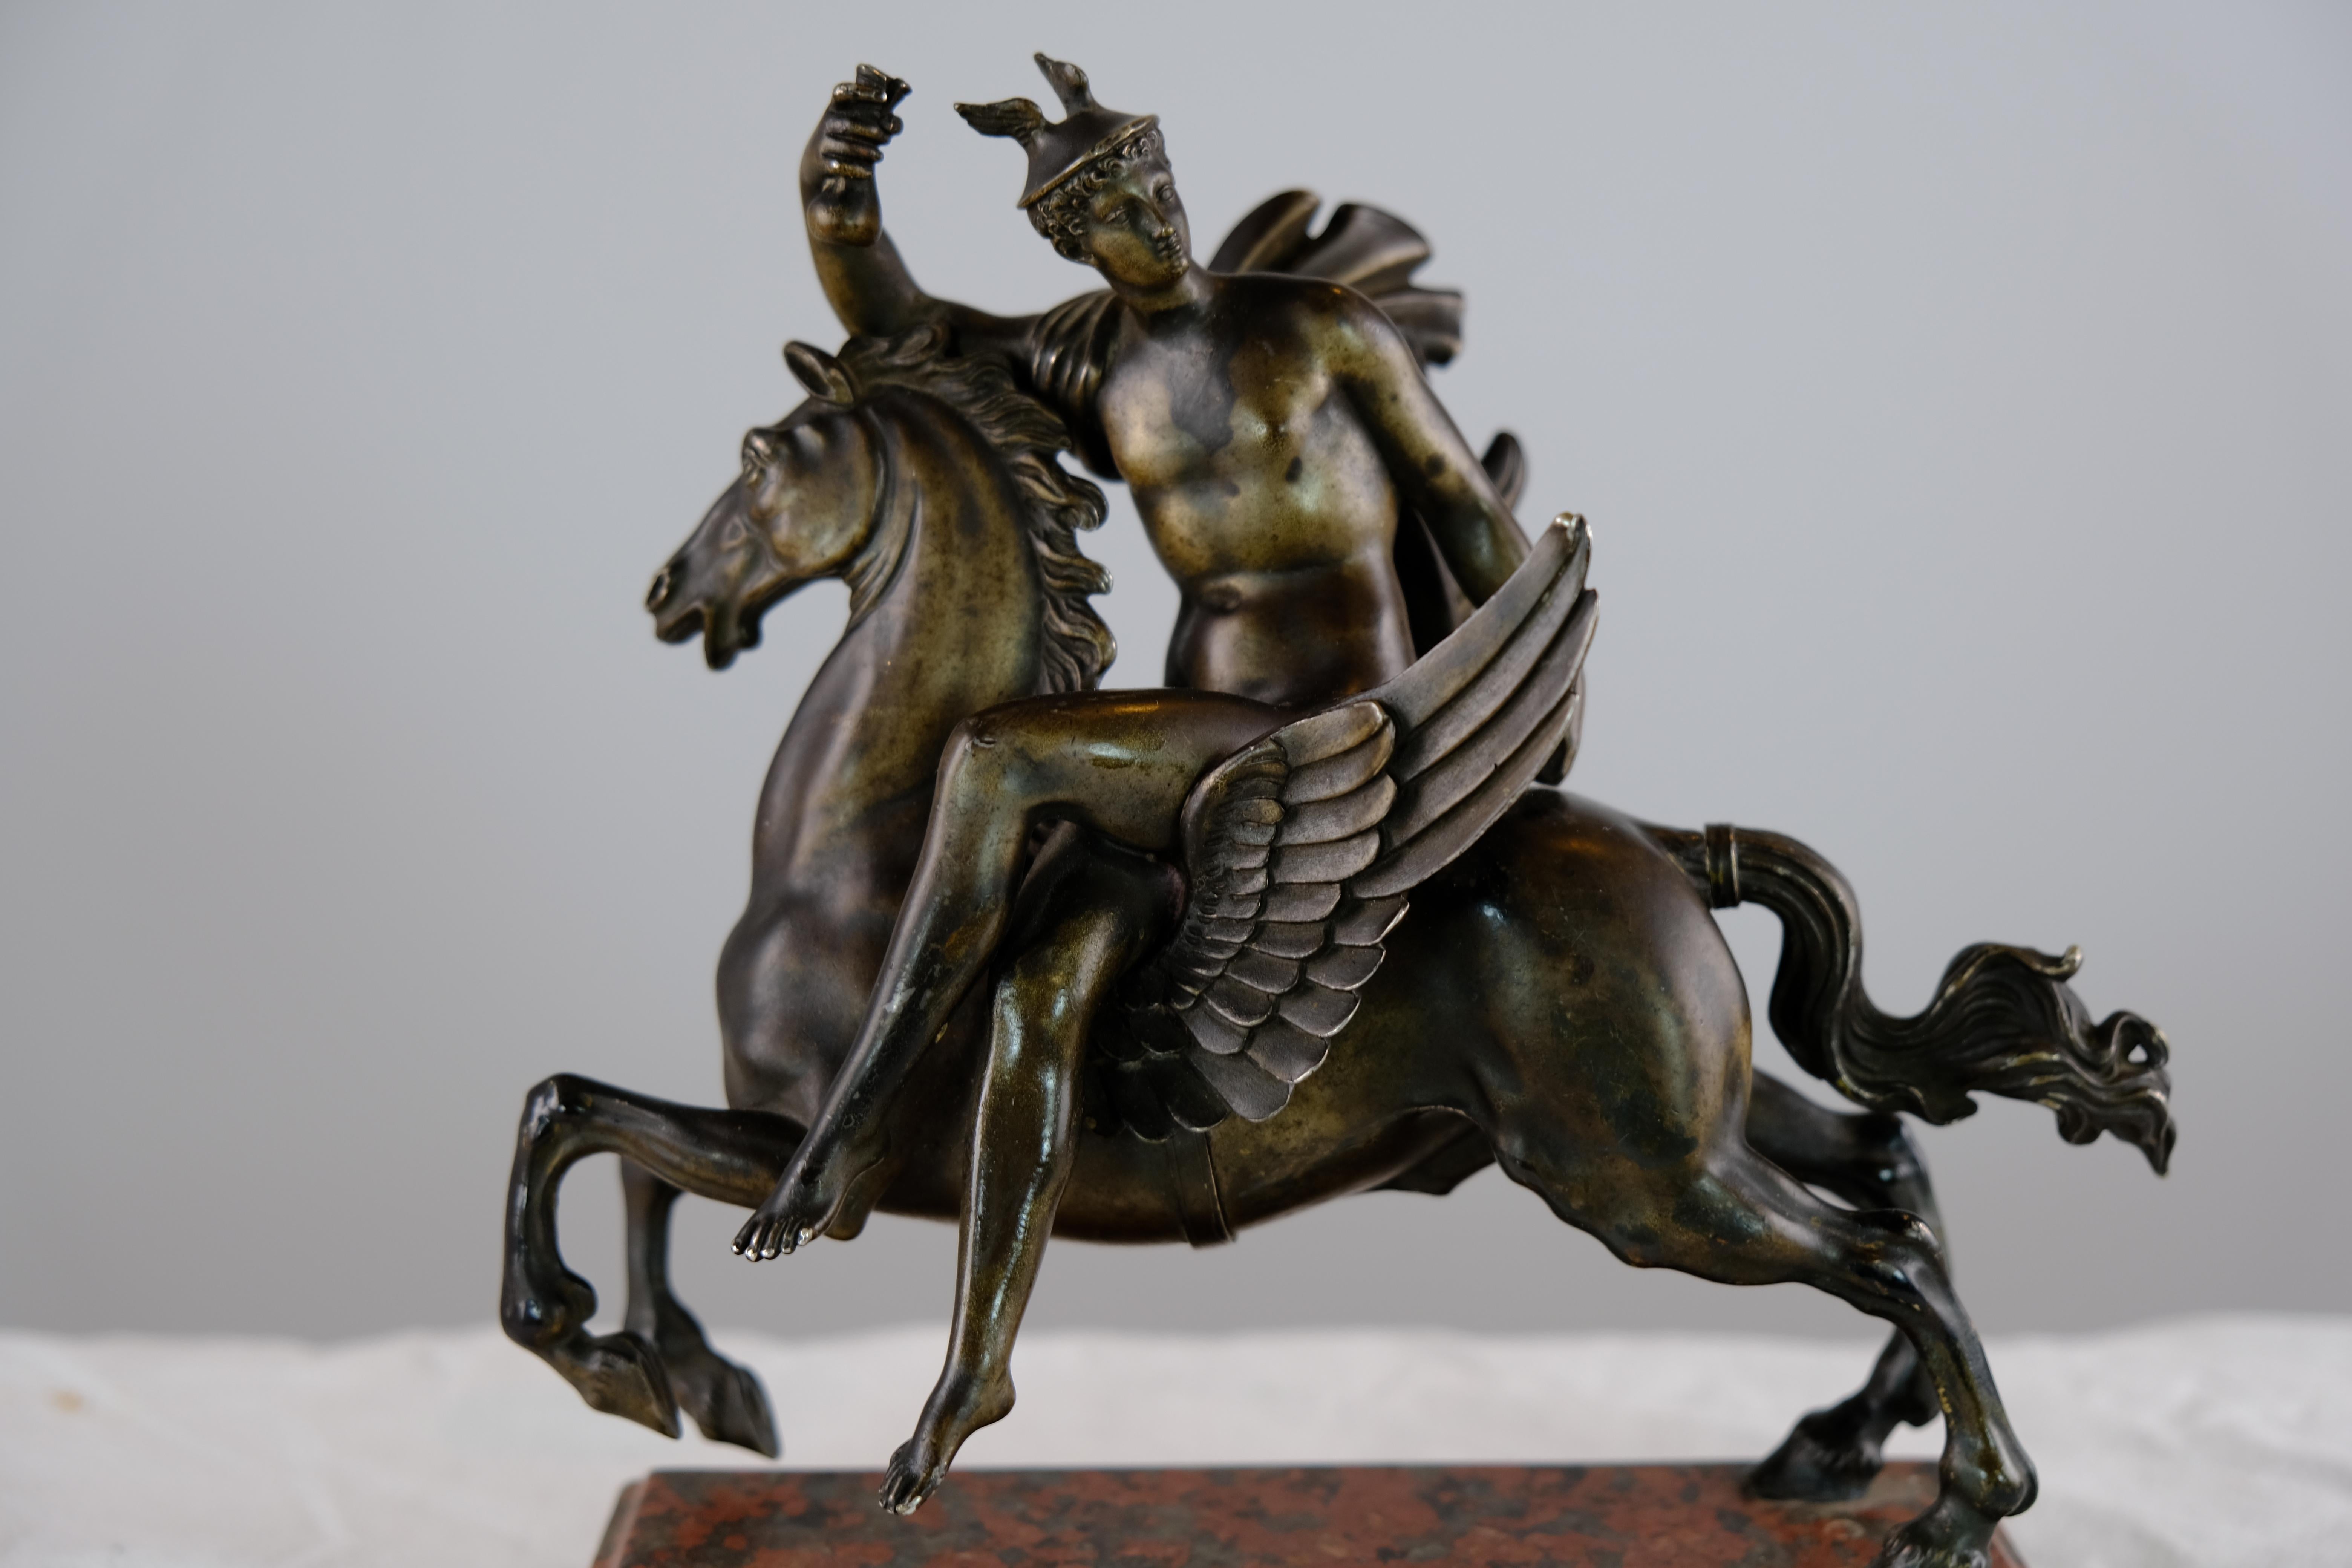 Grand Tour Sculpture Depicting Mercurius Riding Pegasus, Italy Made Around Year 1800